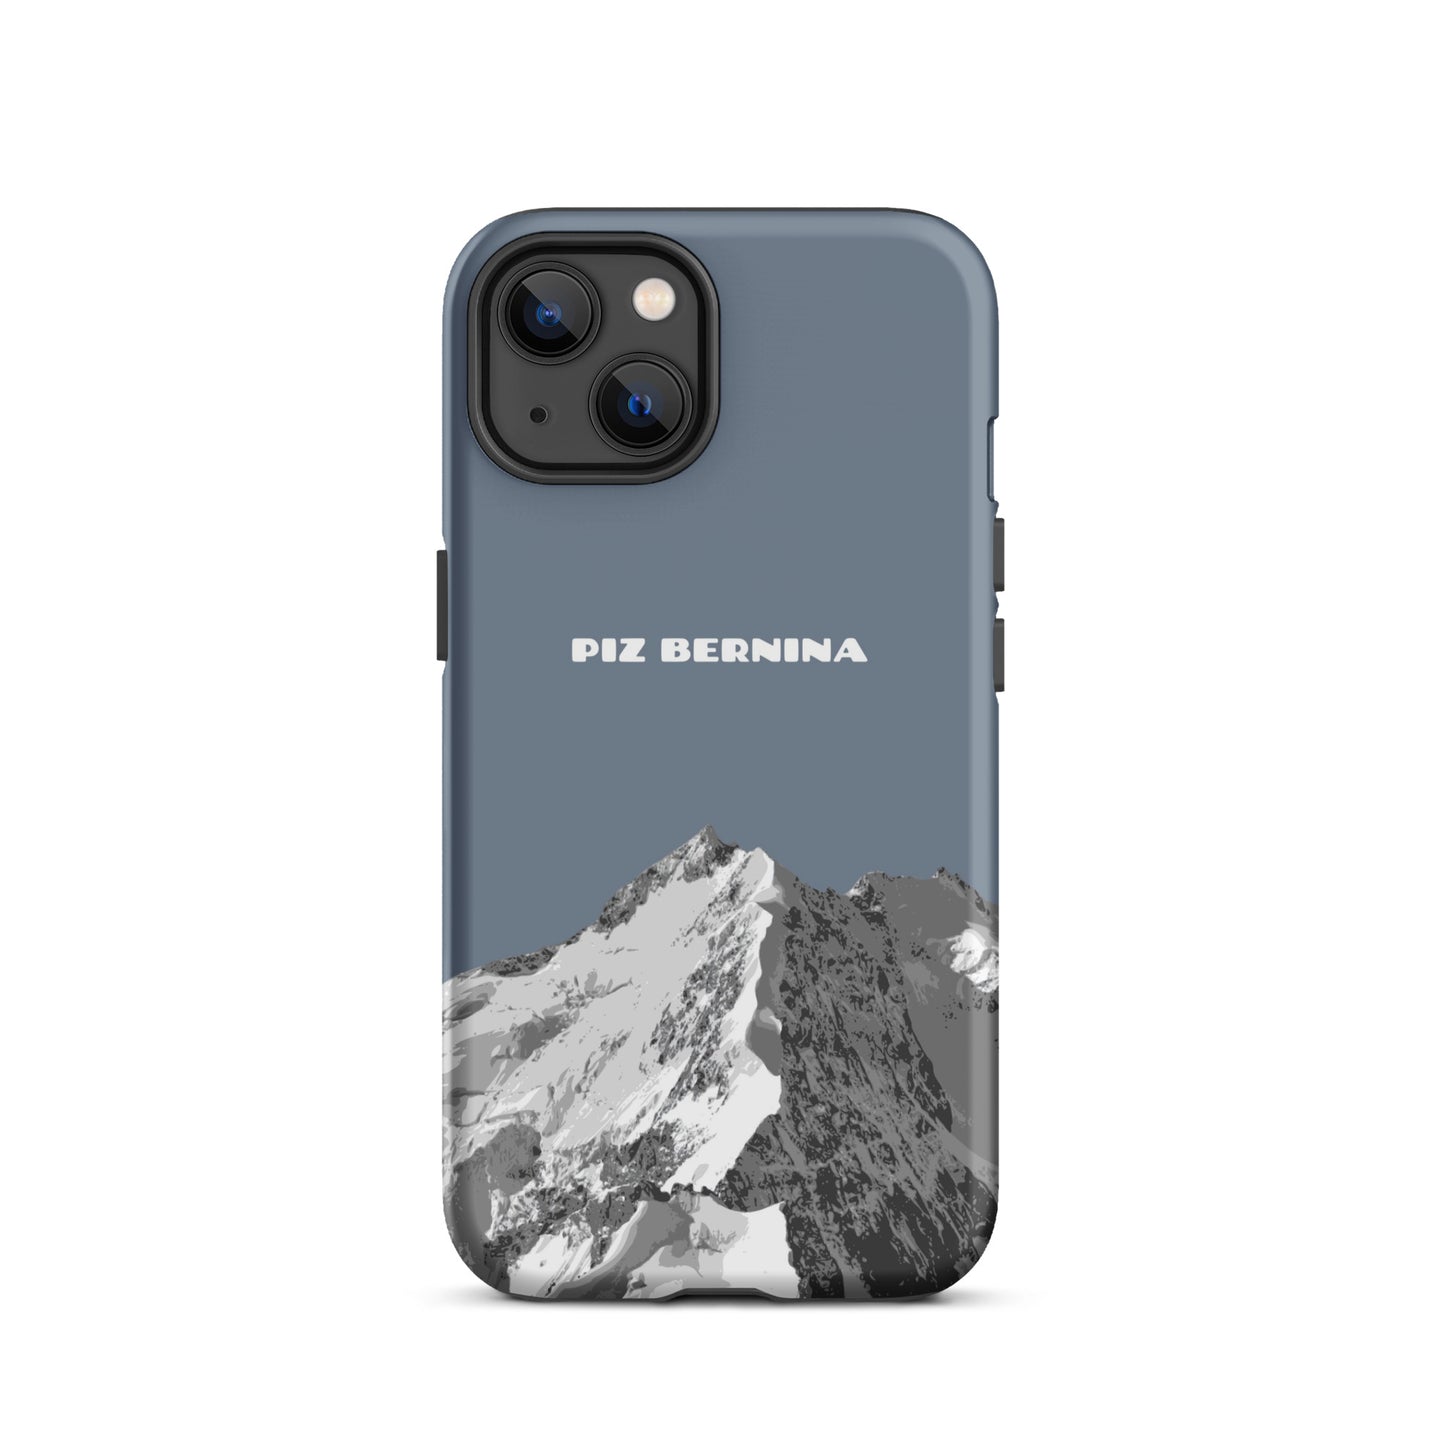 Hülle für das iPhone 13 von Apple in der Farbe Schiefergrau, dass den Piz Bernina in Graubünden zeigt.